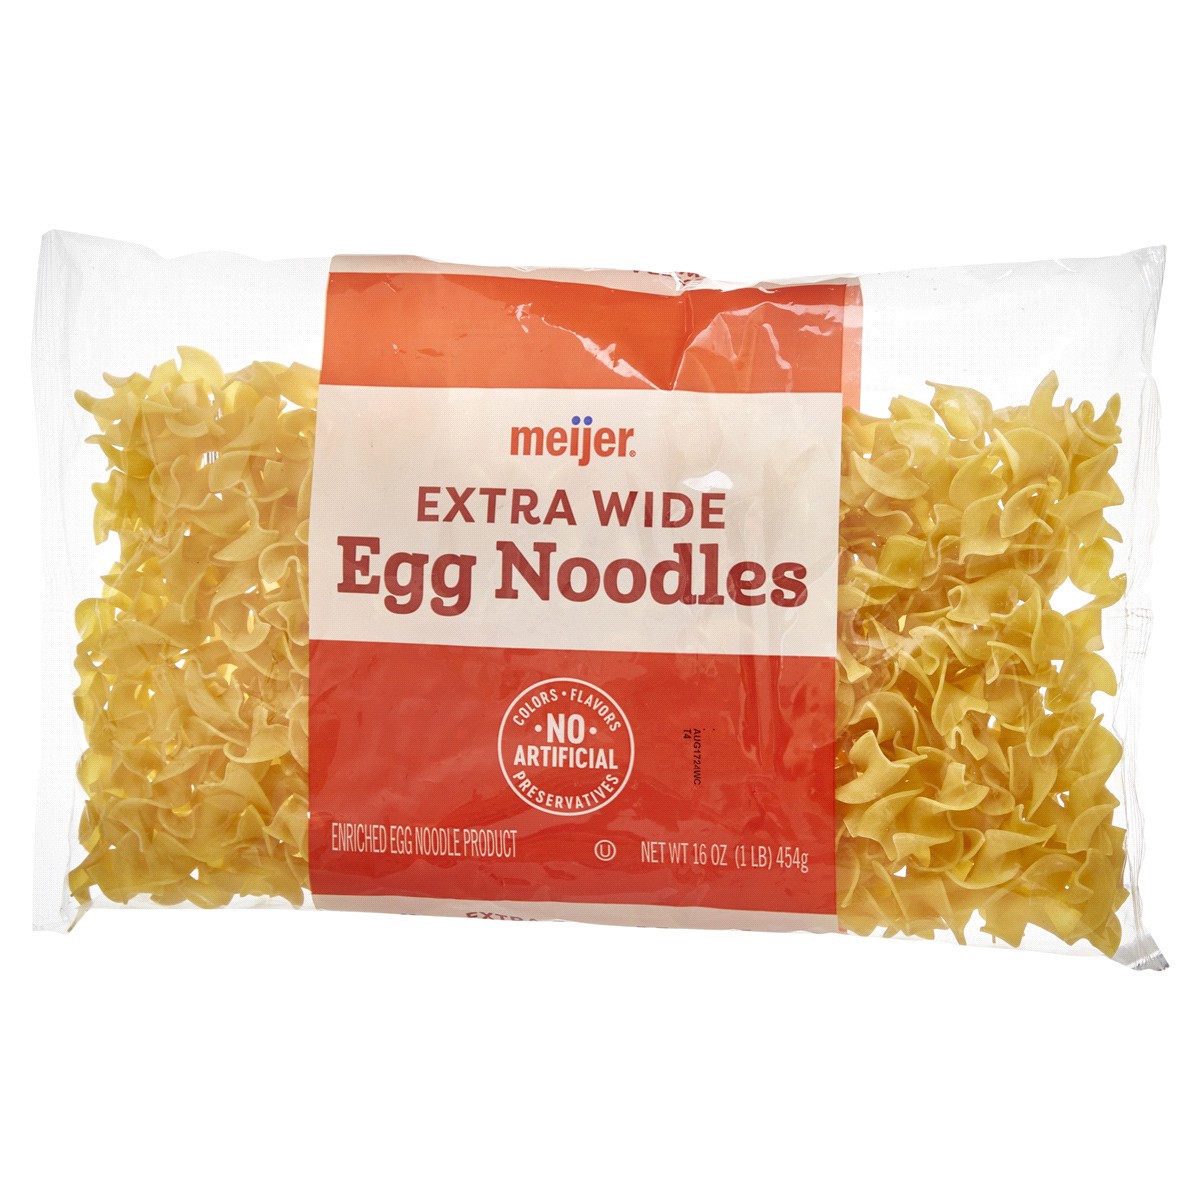 slide 9 of 29, Meijer Egg Noodles Extra Wide, 16 oz